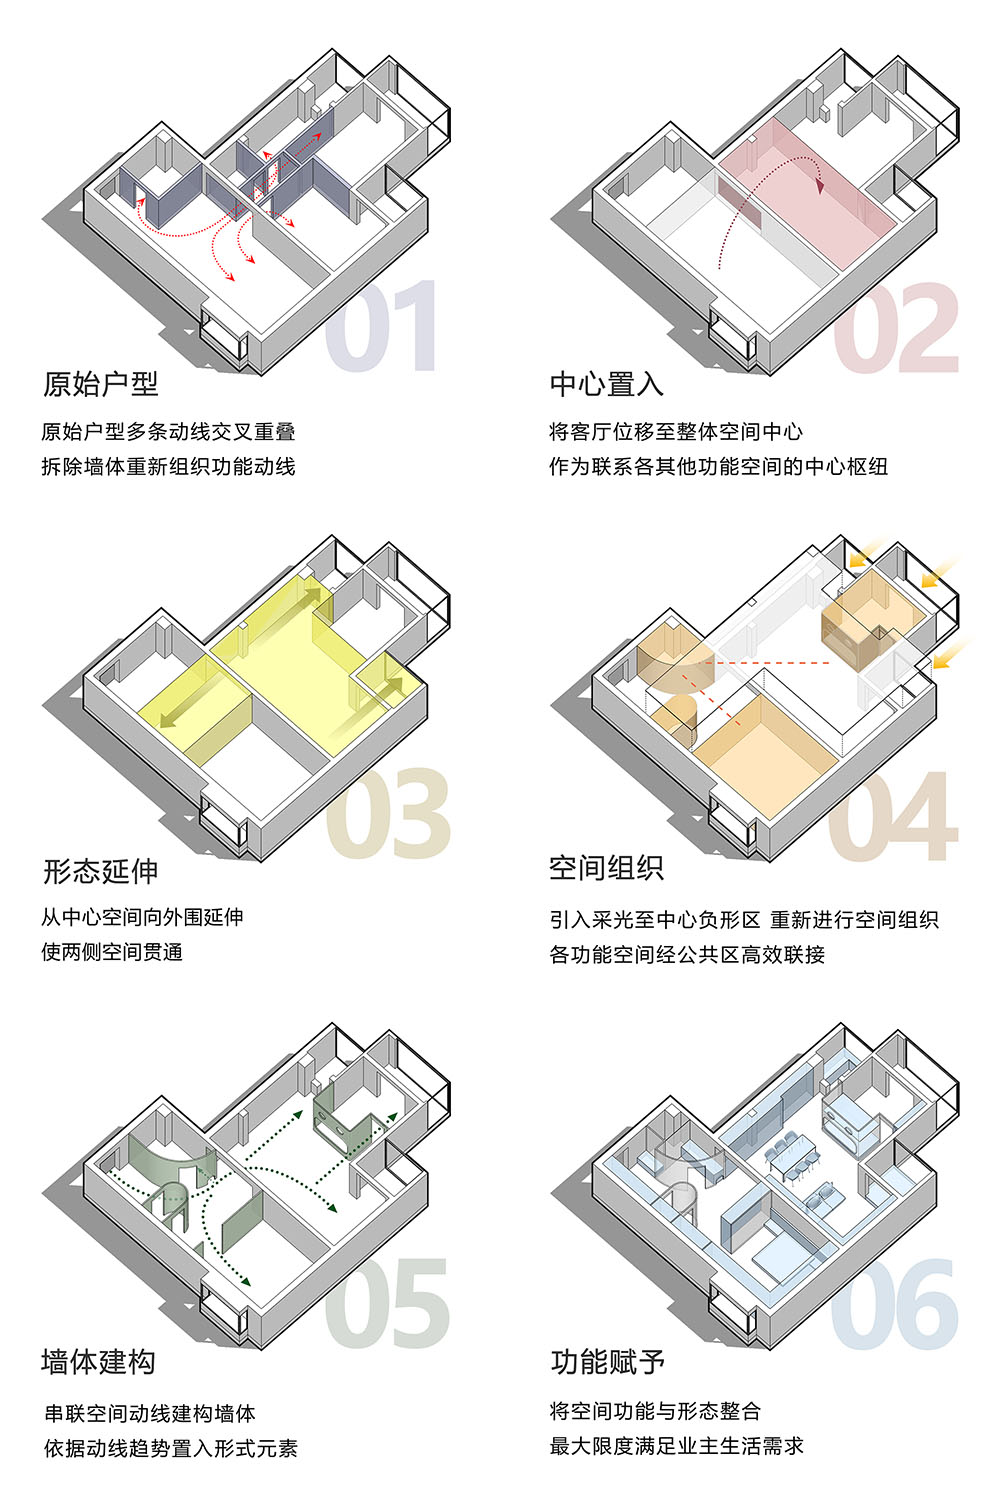 133㎡住宅设计,133㎡,住宅设计,家装设计,北京,北京住宅设计,现代风格住宅设计,北京家装设计,住宅设计案例,戏构建筑,戏构建筑设计,戏构建筑设计公司,戏构建筑设计工作室